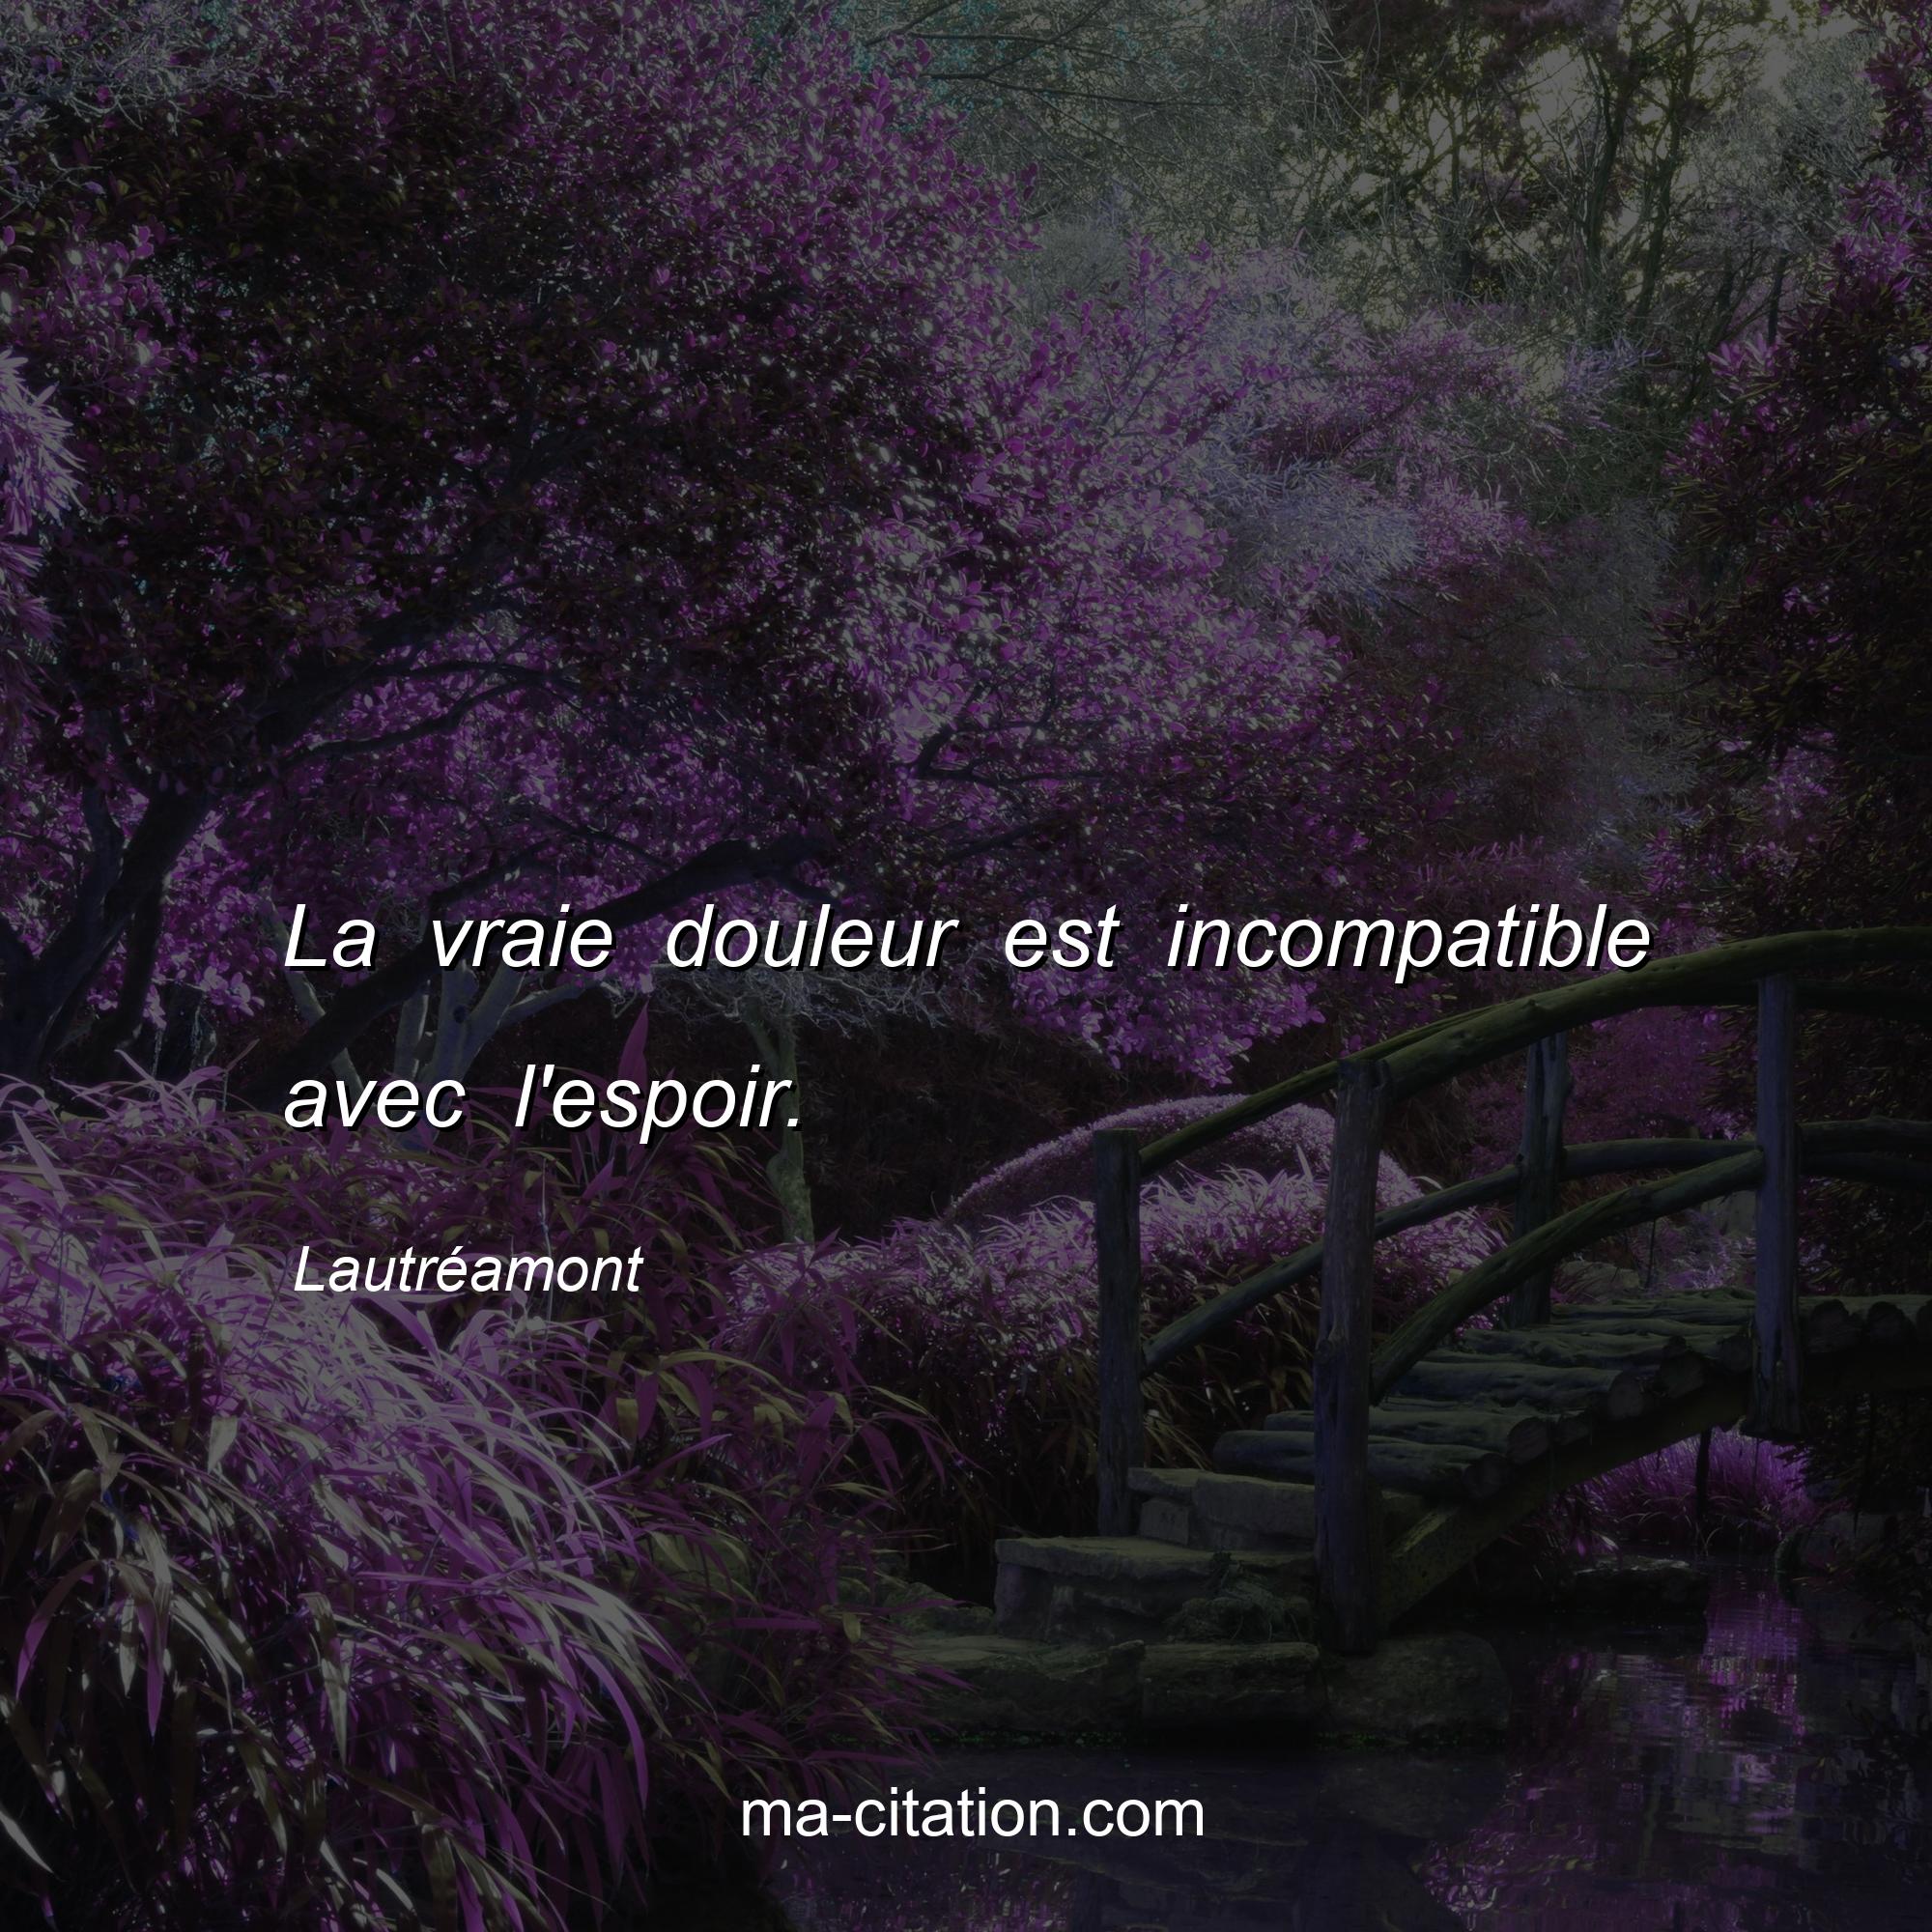 Lautréamont : La vraie douleur est incompatible avec l'espoir.